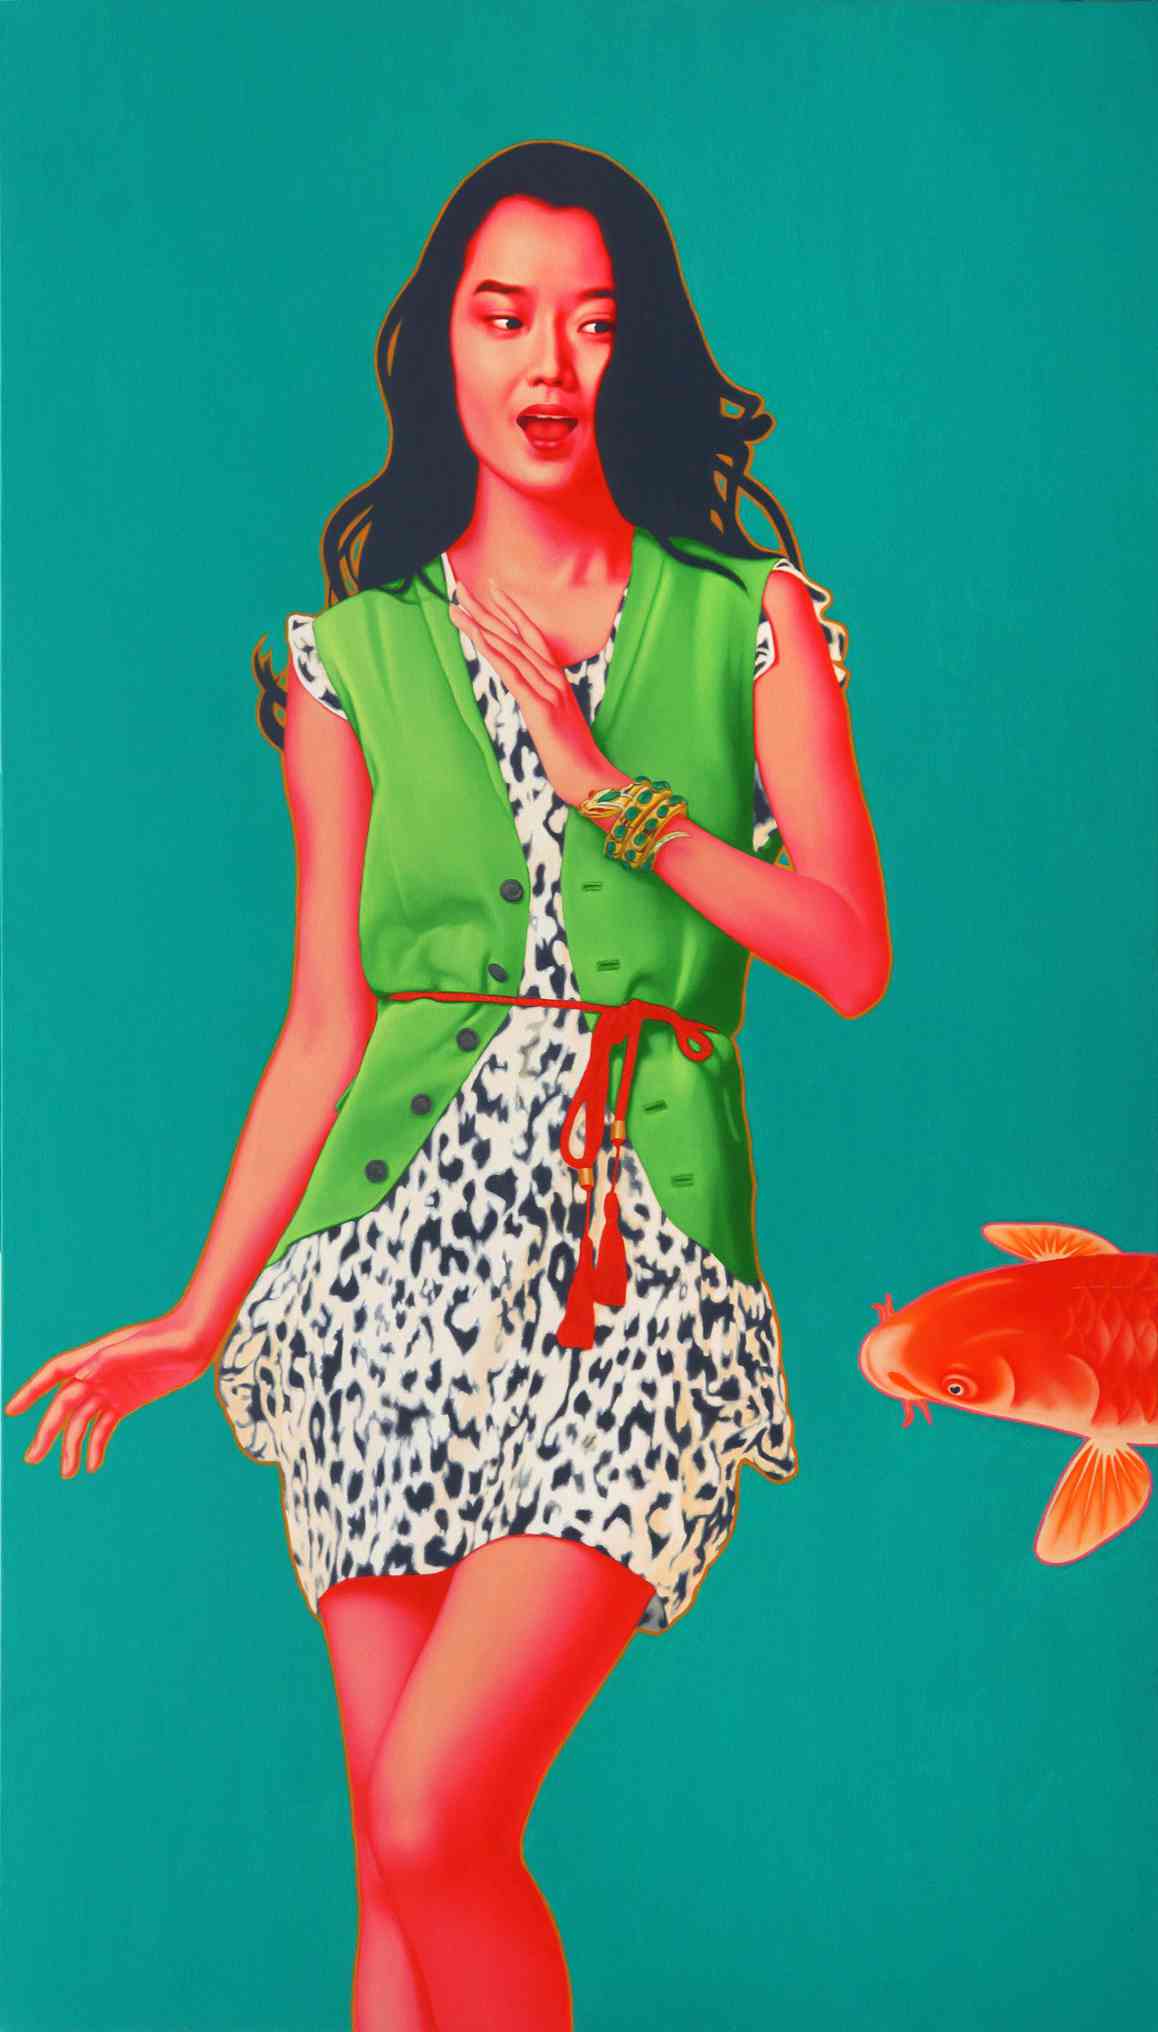 鱼·女孩 FISH GIRL 210X120cm 布面油画 OIL ON CANVAS